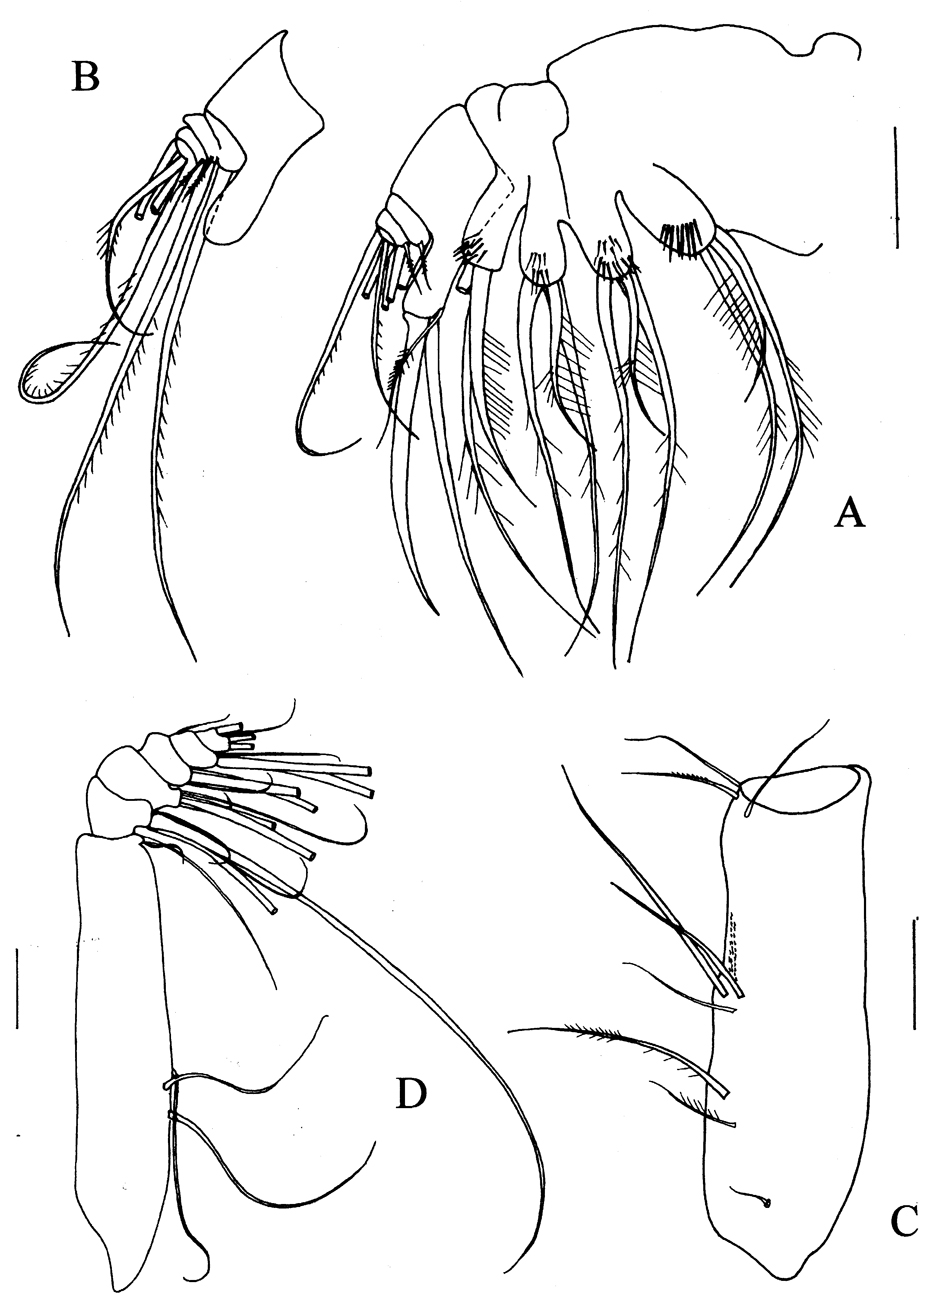 Espce Prolutamator hadalis - Planche 3 de figures morphologiques